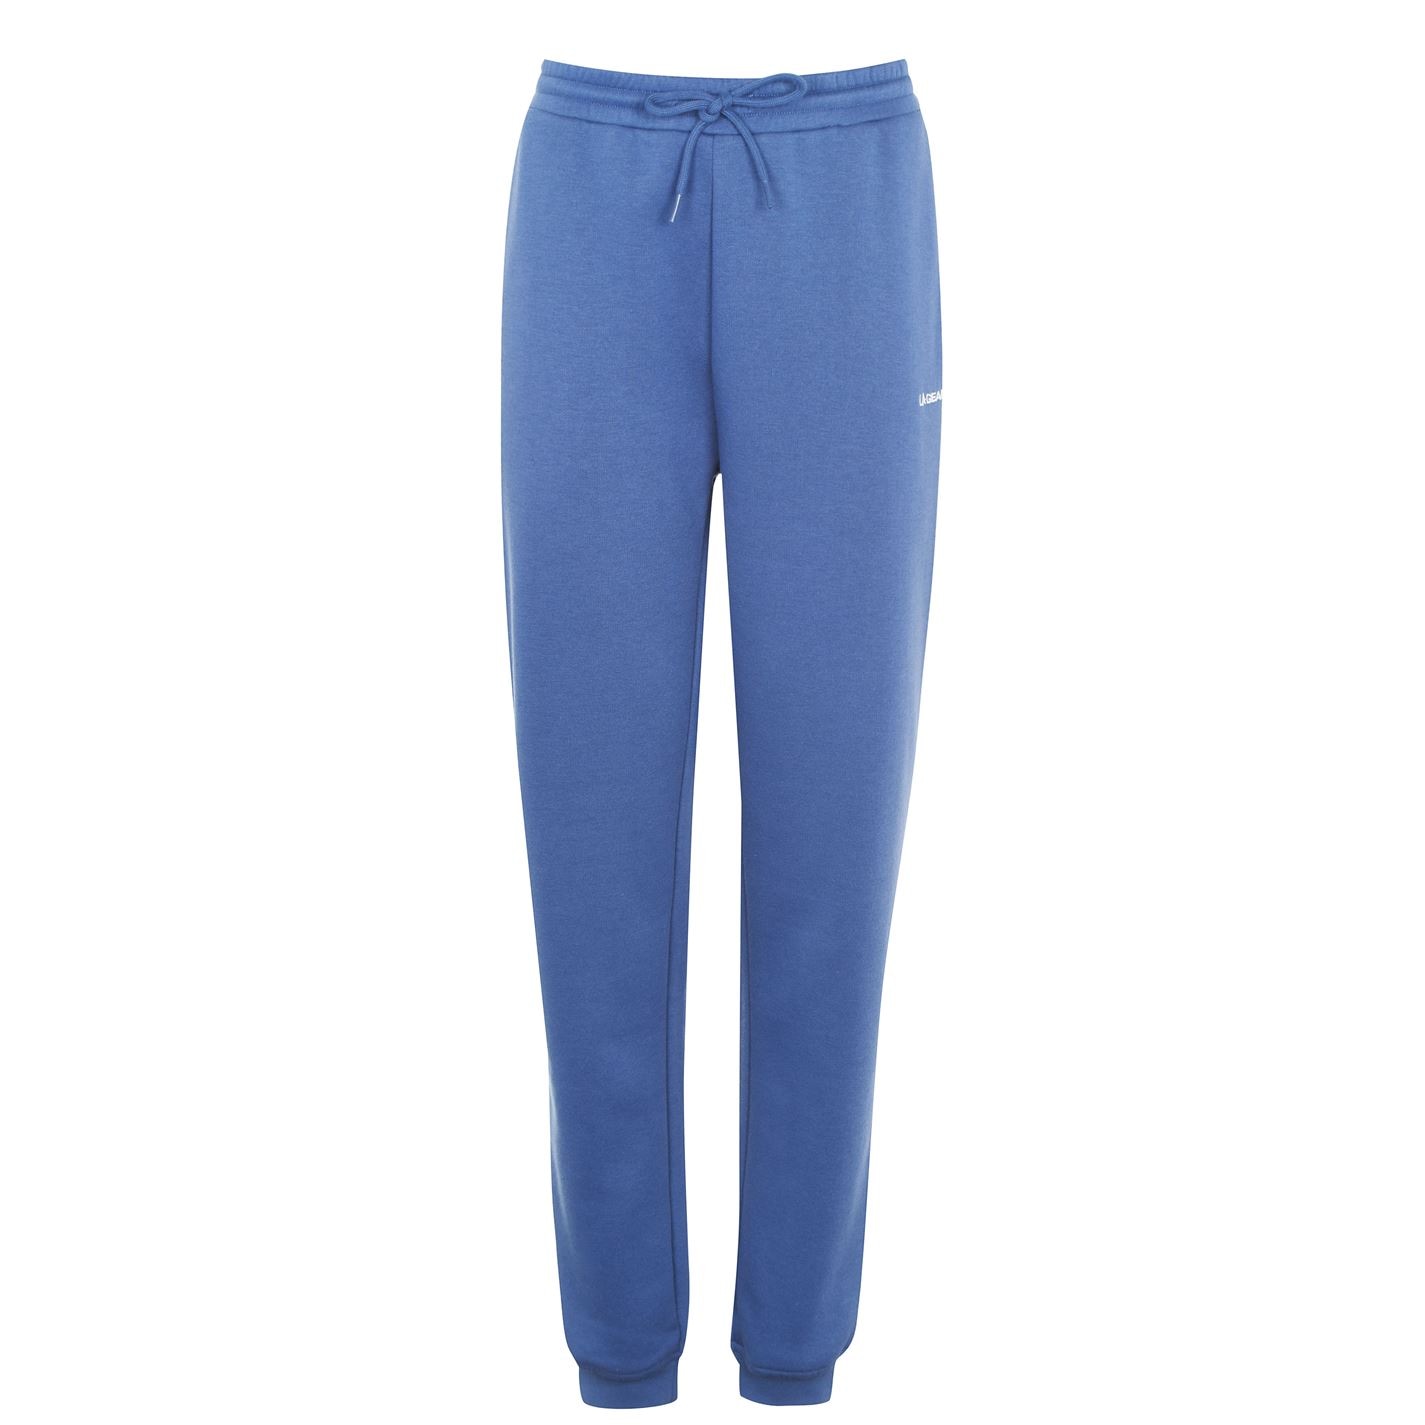 Pantaloni jogging LA Gear cu mansete pentru Femei gri albastru